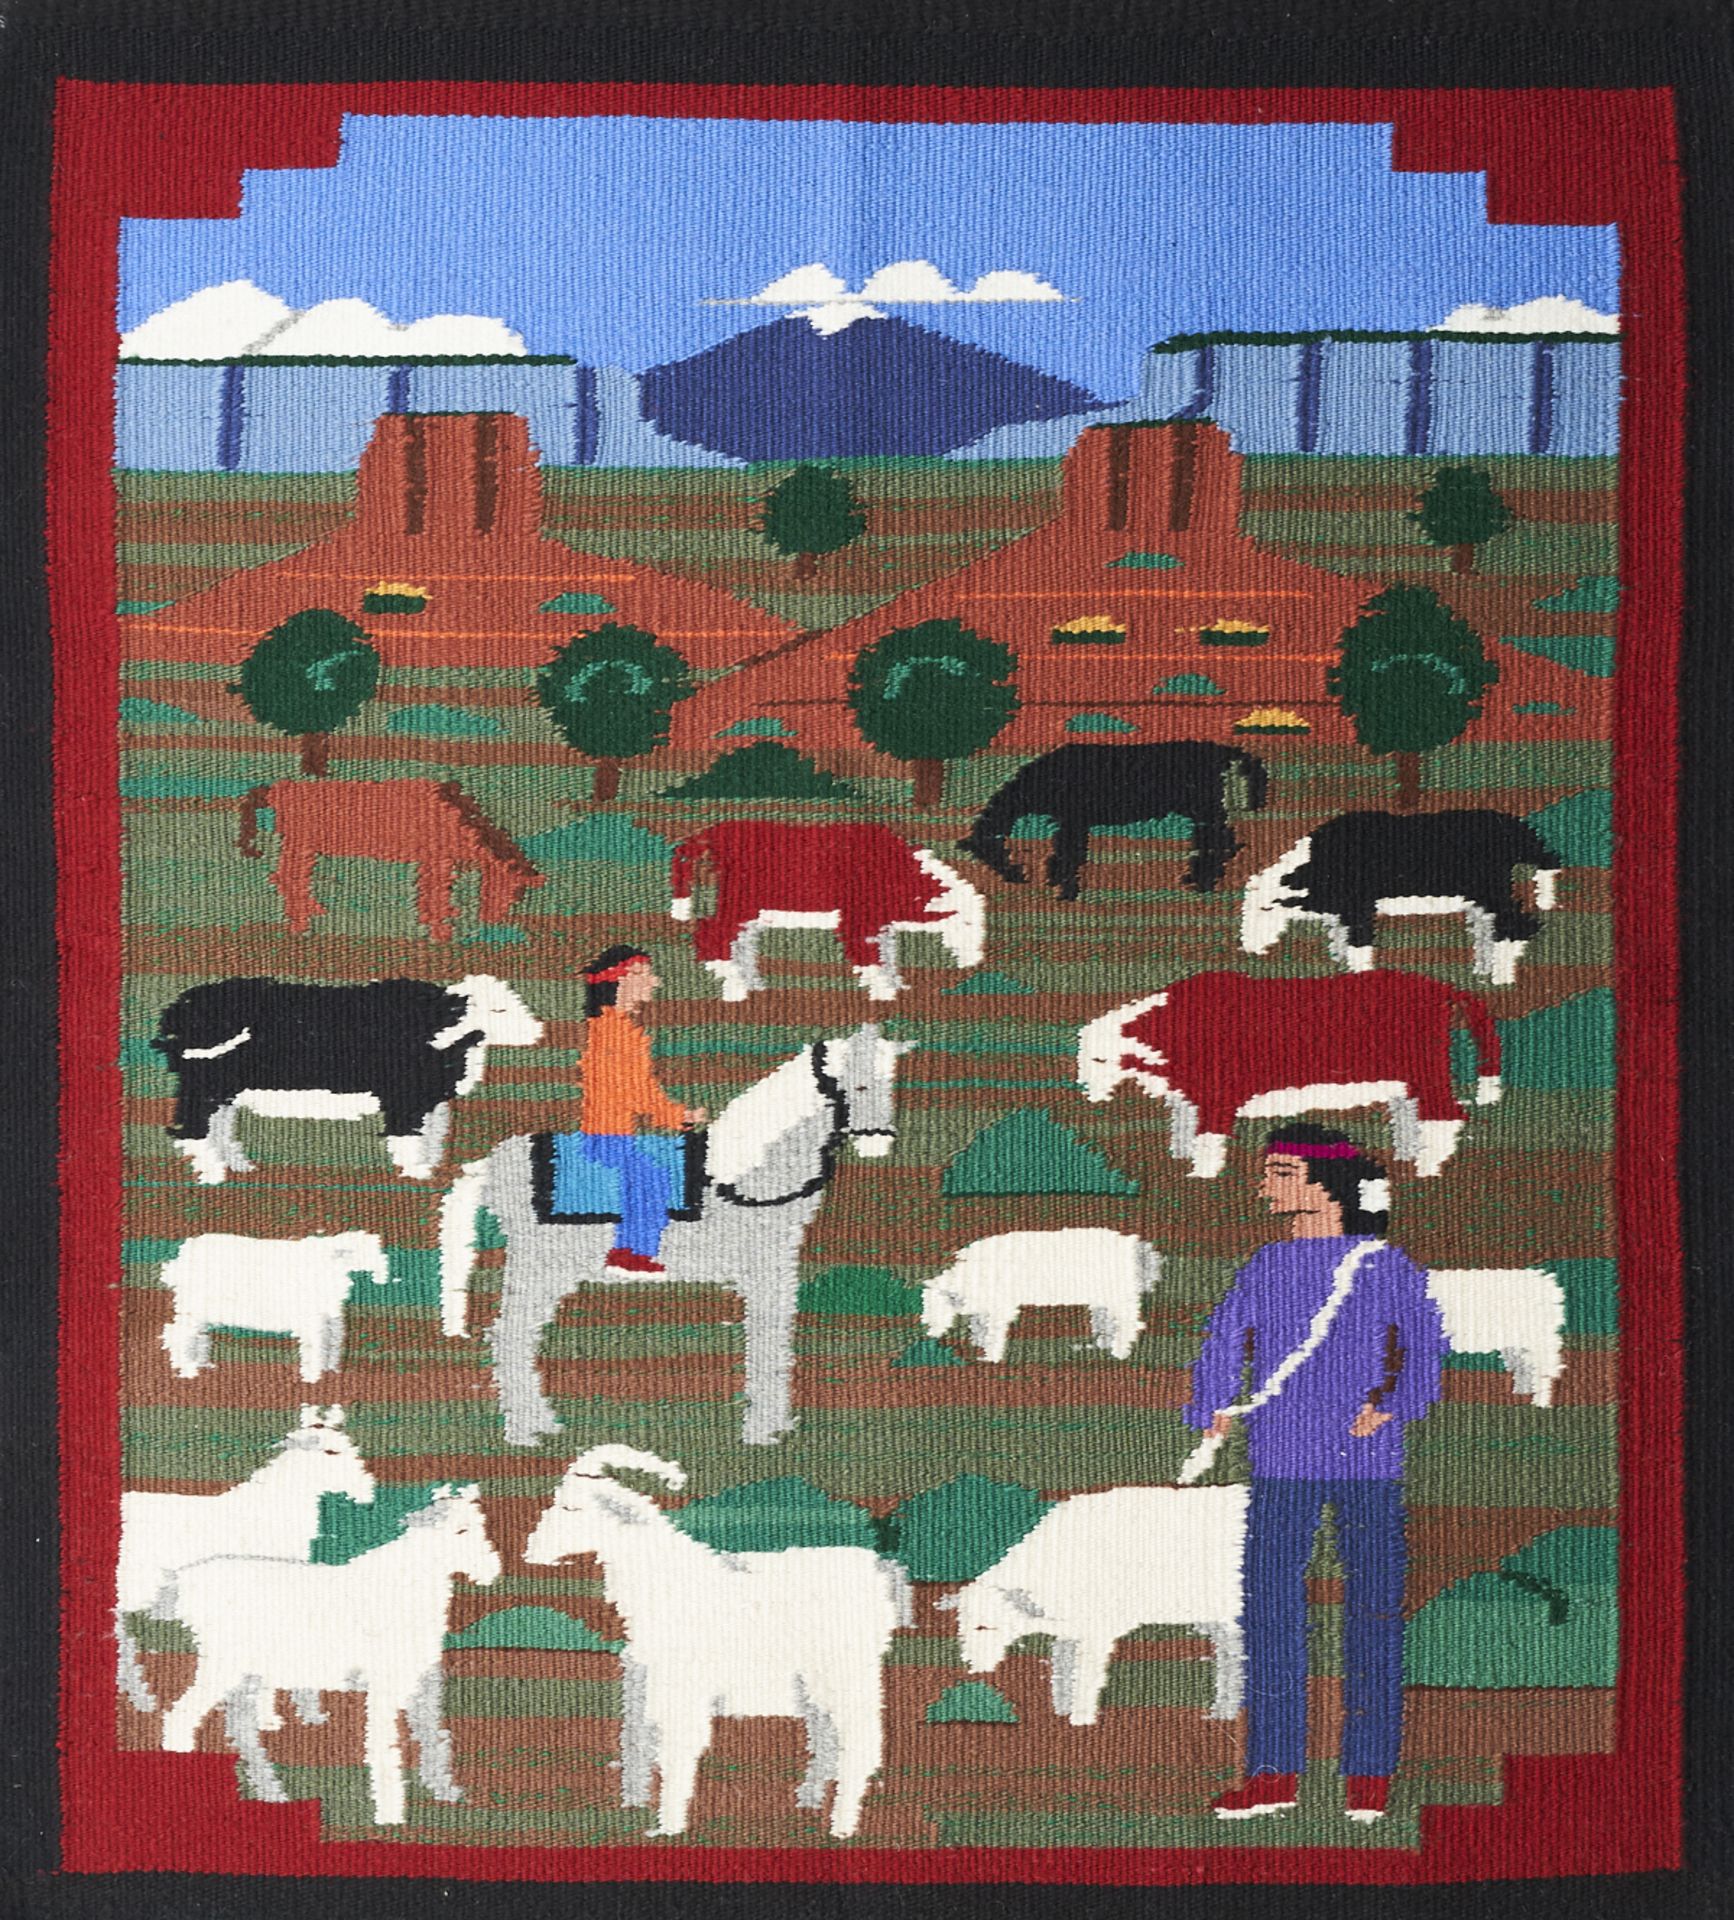 Pictorial Navajo Rug Weaving Blanket Prairie Farm Scene - Image 2 of 4